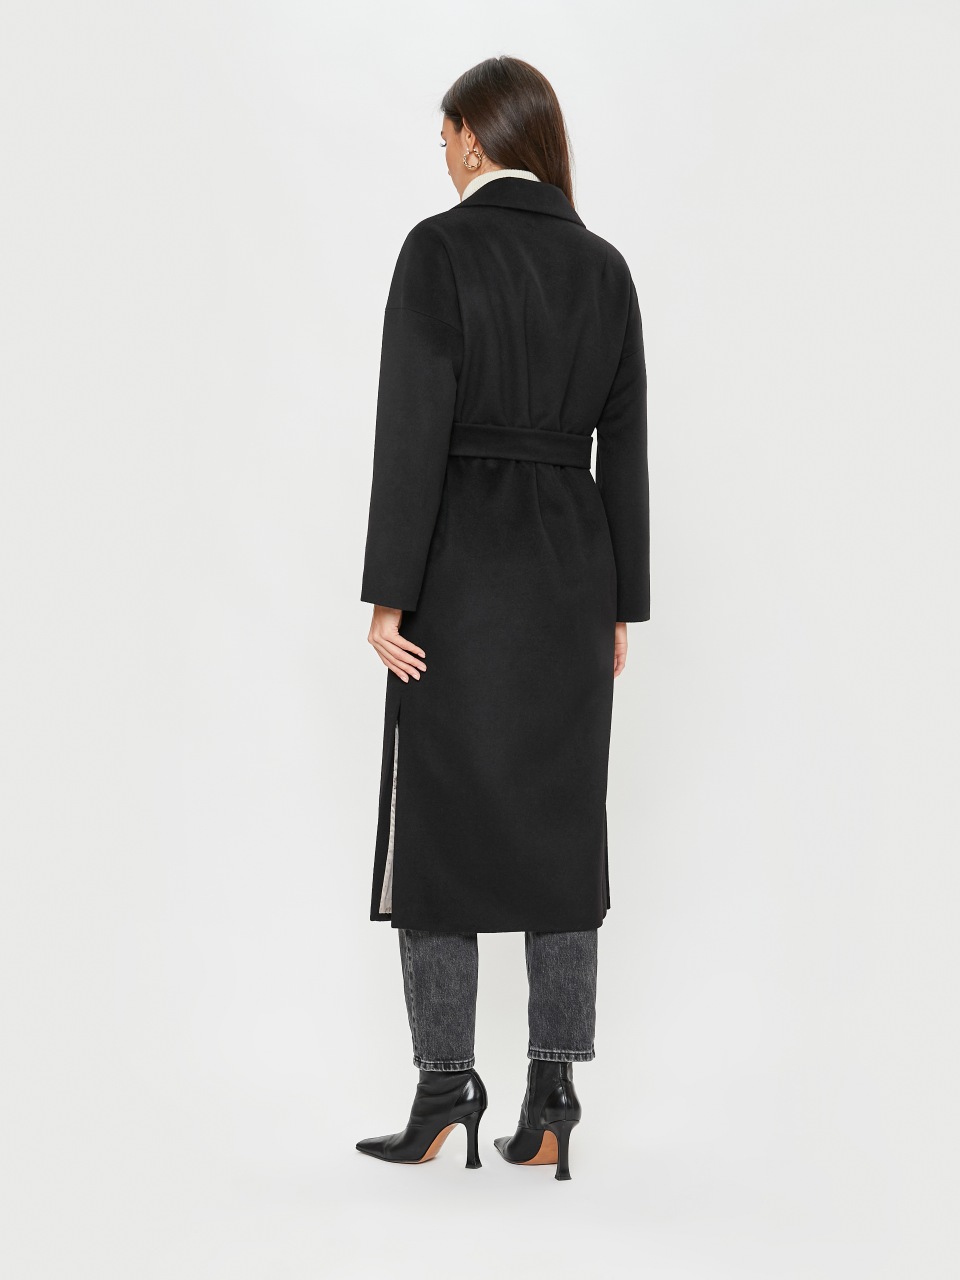 Пальто женское ElectraStyle 6-2121-289 черное 50 RU